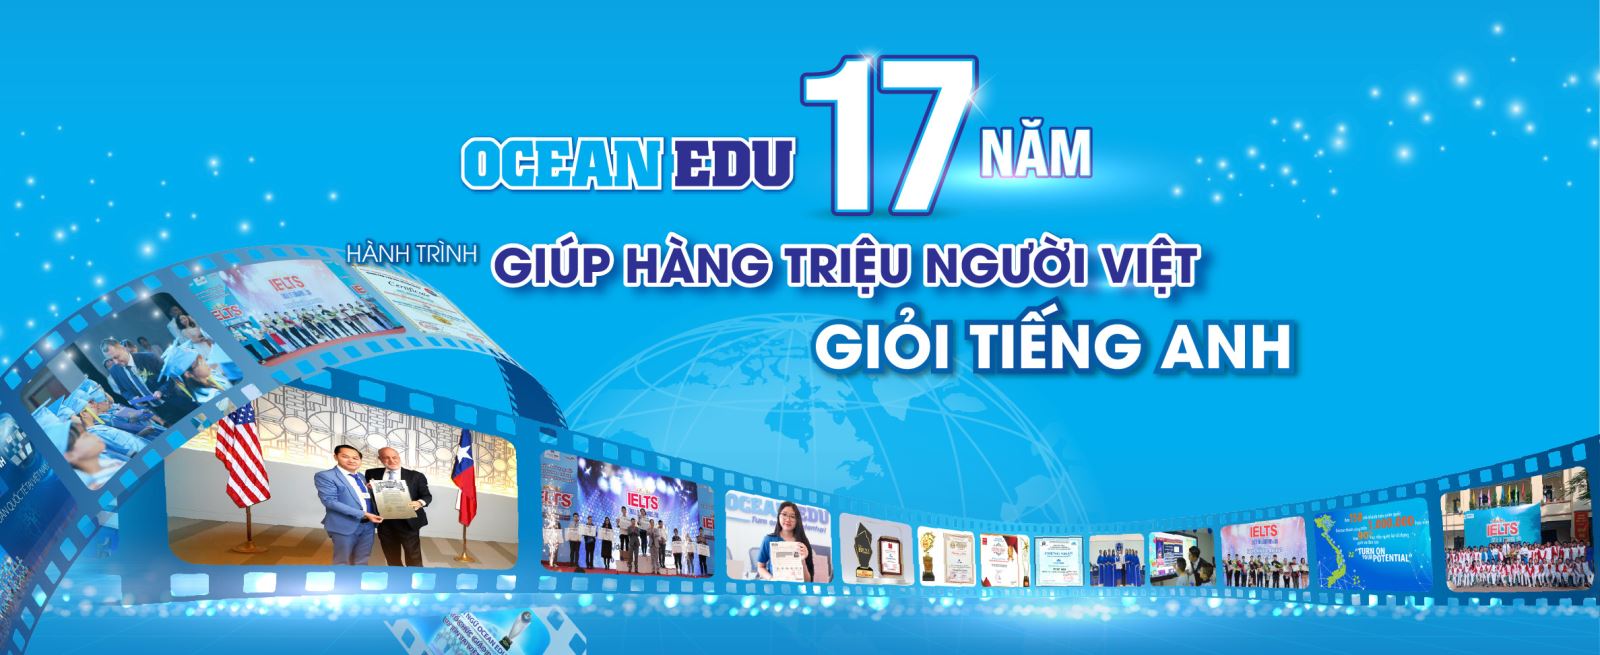 ocean edu 17 năm giúp hàng triệu người Việt giổi tiếng Anh